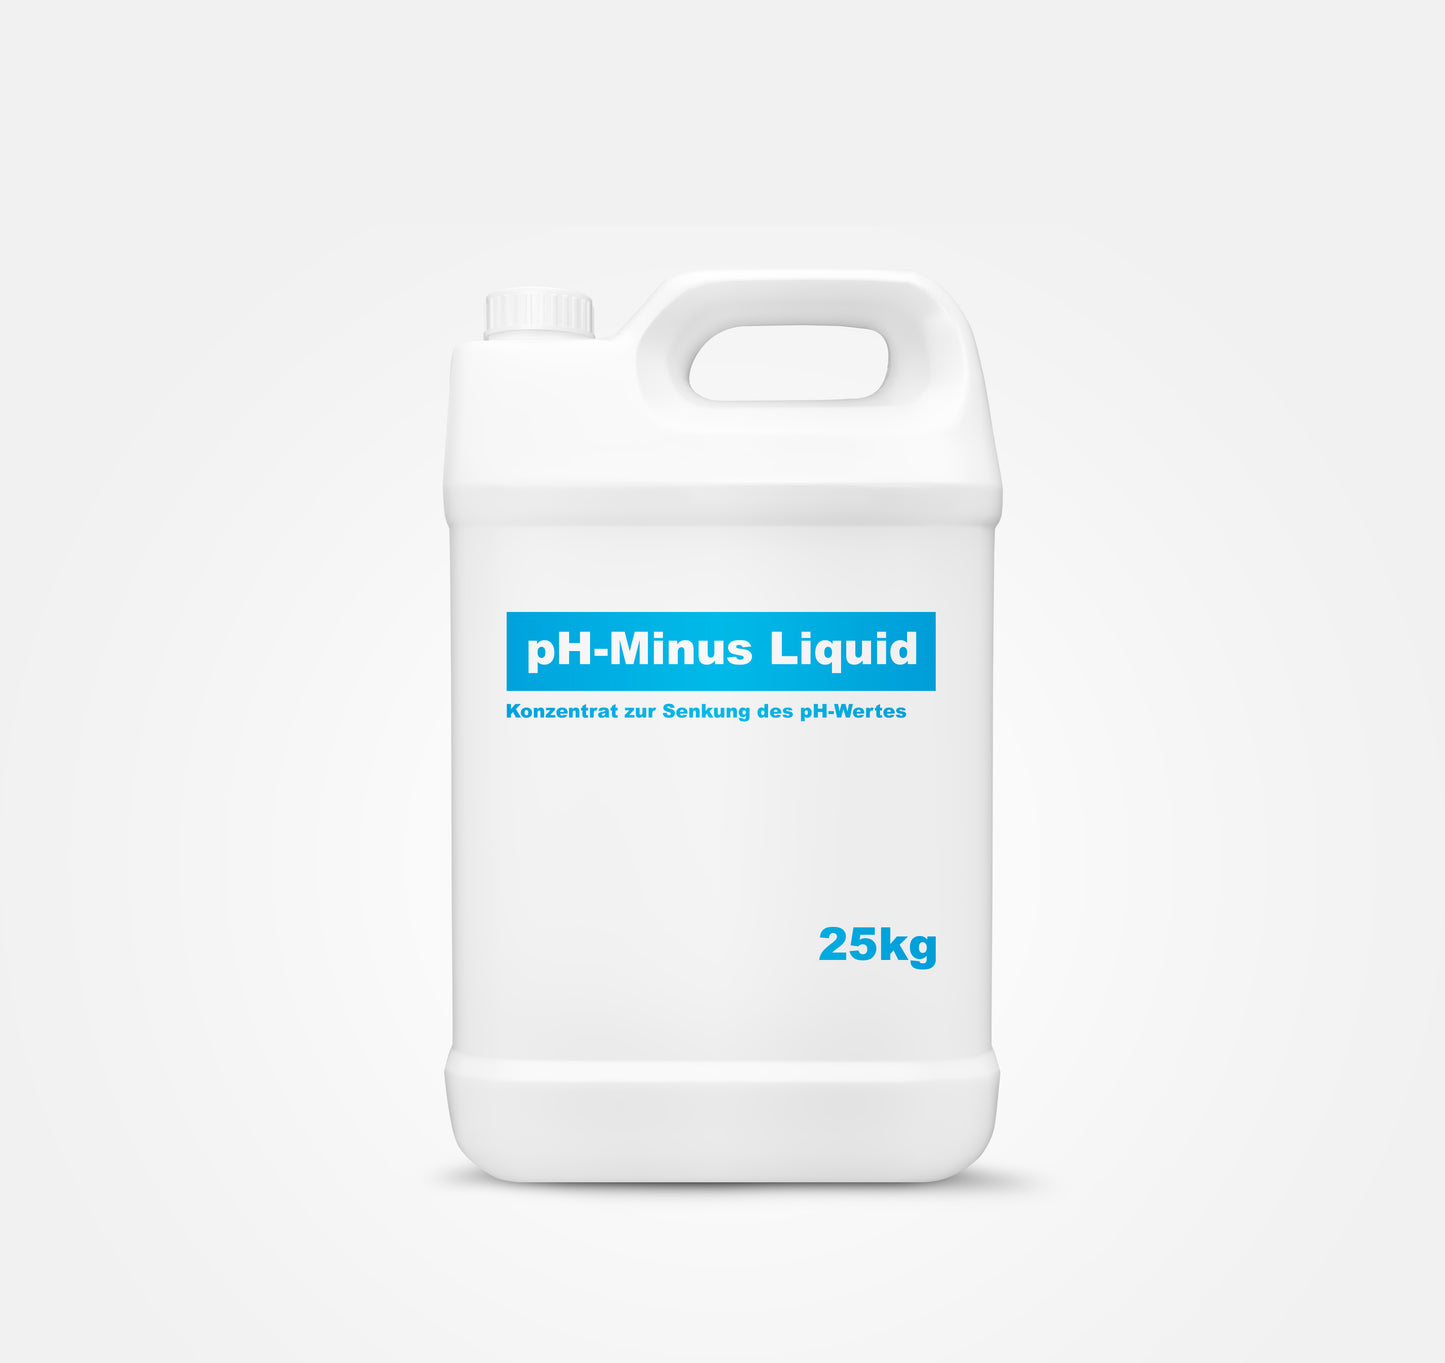 pH-Minus liquid - Konzentrat zur Senkung de pH Wertes 25kg